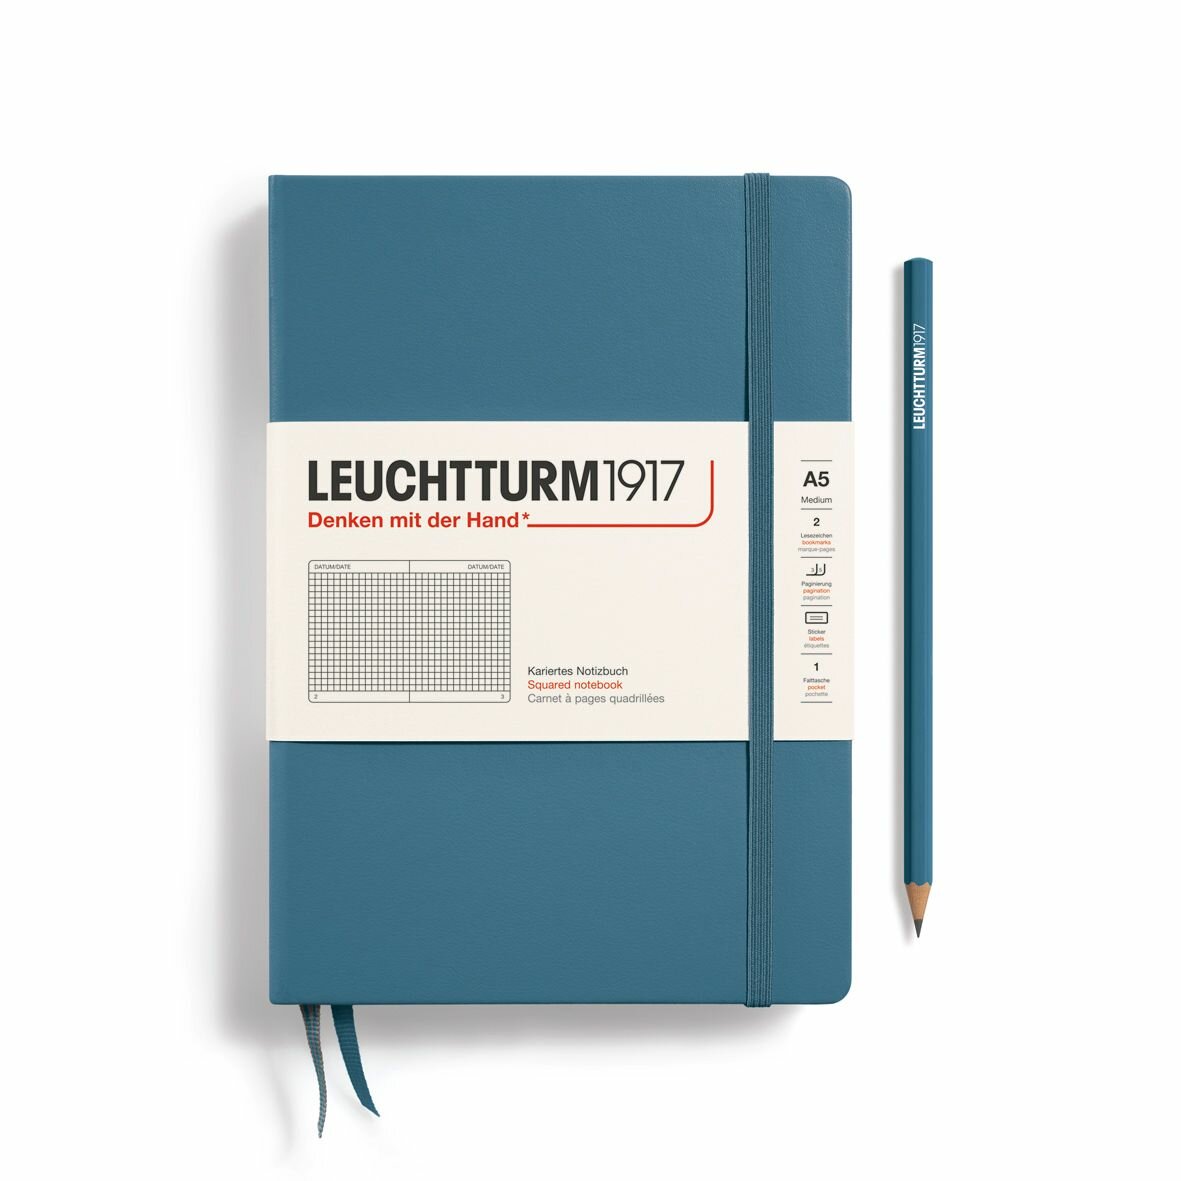 Блокнот Leuchtturm1917 Rising Colours A5 (14.5x21см.) 80г/м2 - 251 стр. в клетку, твердая обложка, цвет: Синий Камень